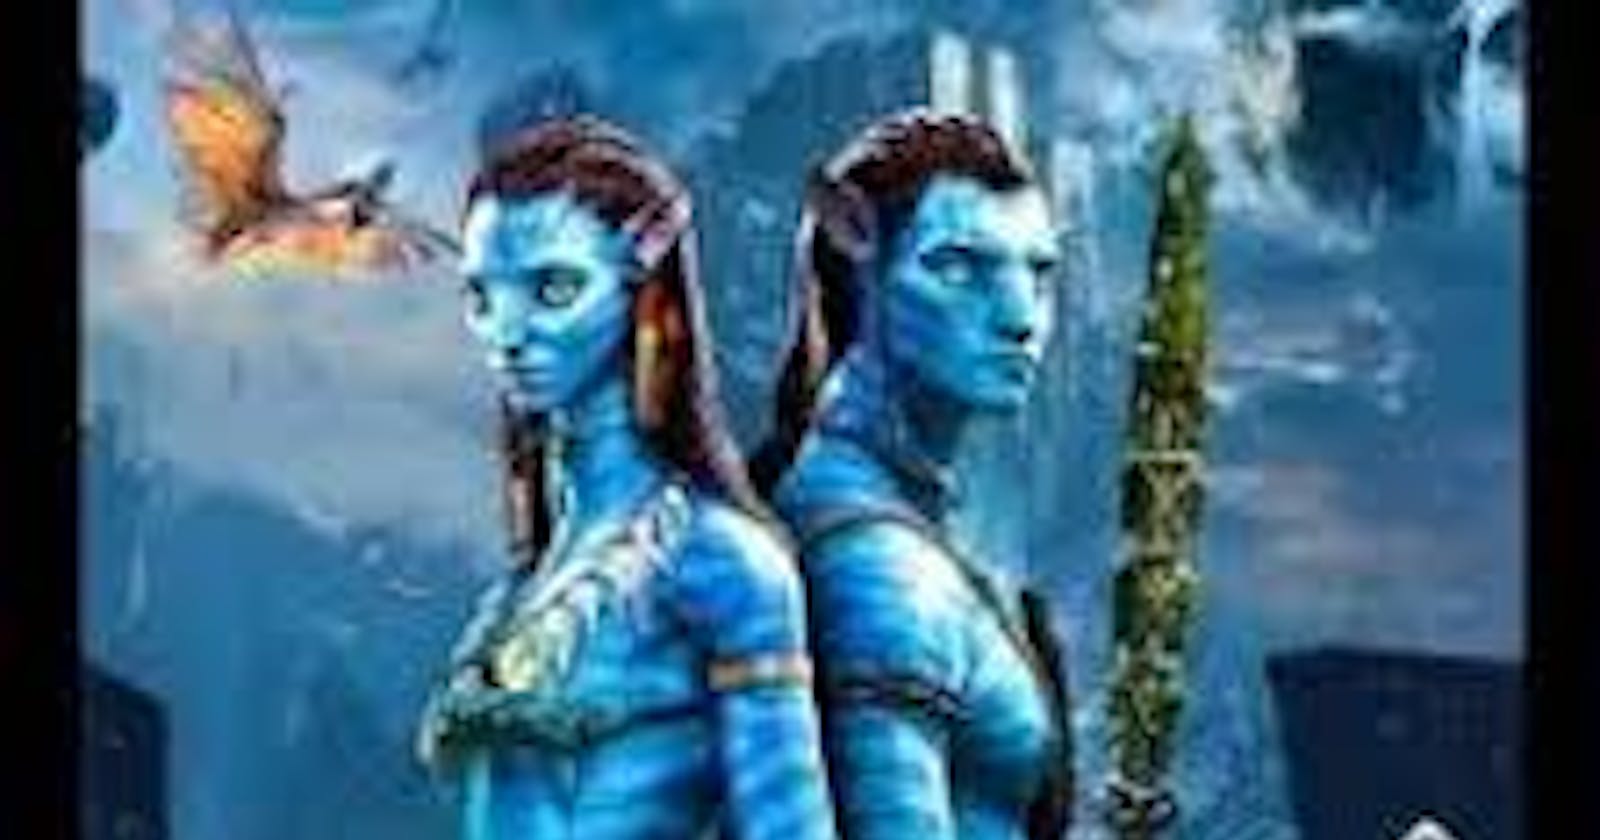 [FILMS VOIR] Avatar 2 : la voie de l'eau (2022) streaming vf Français Gratuit